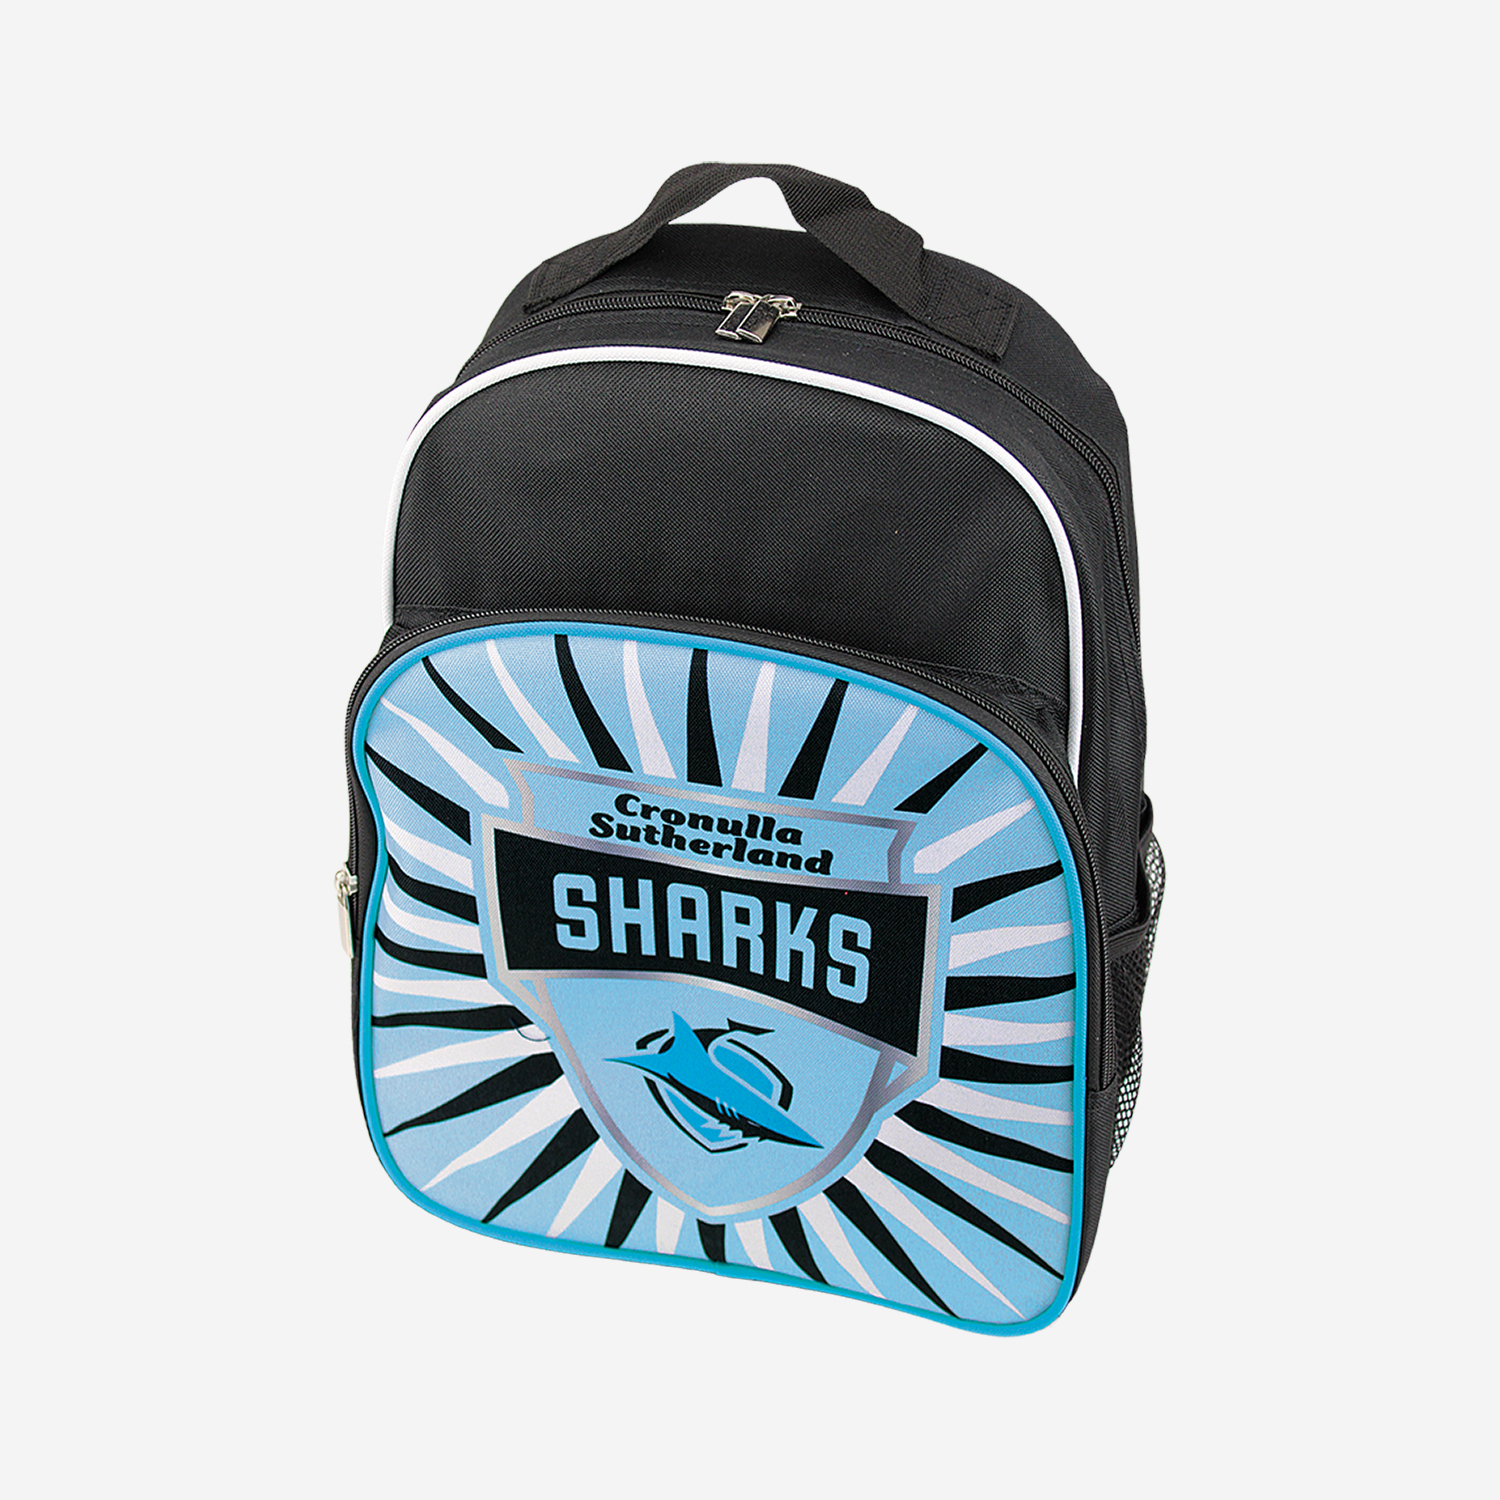 Sharks NRL Backpack